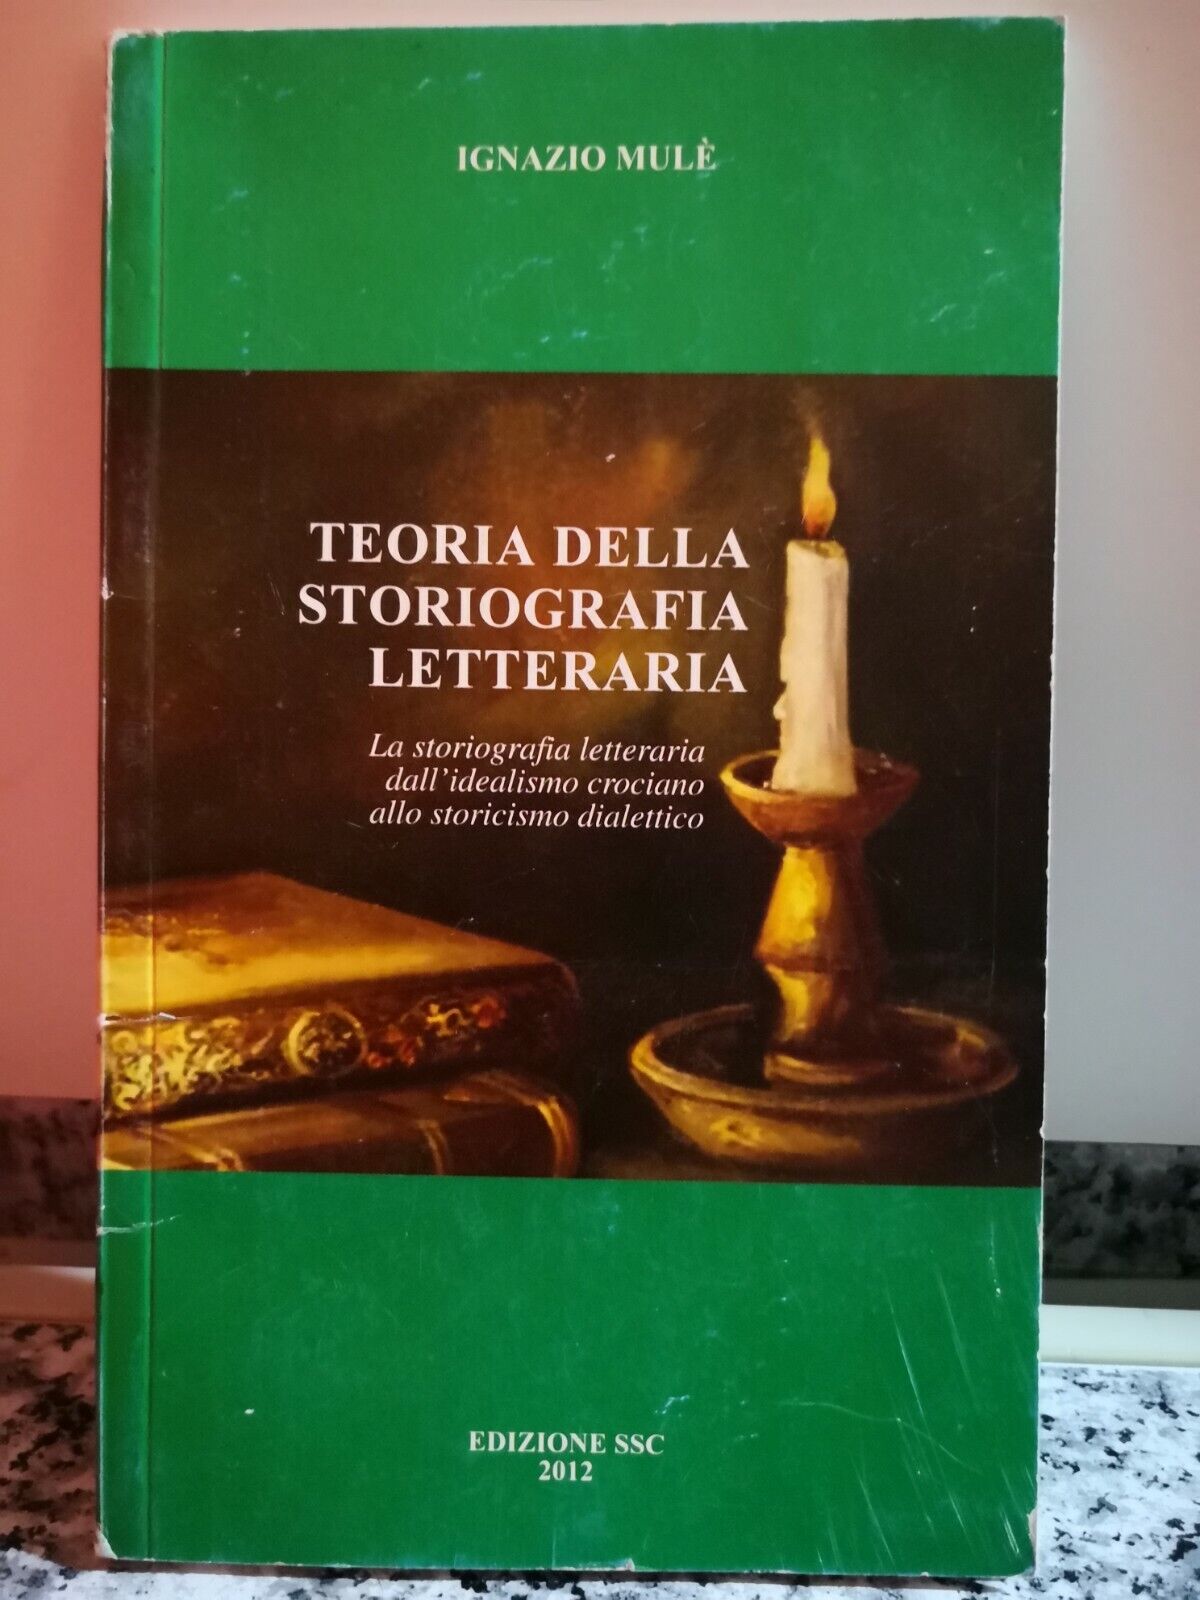 Teoria della Storiografia Letteraria  di Ignazio Mul?,  2012,  Edizione Ssc -F